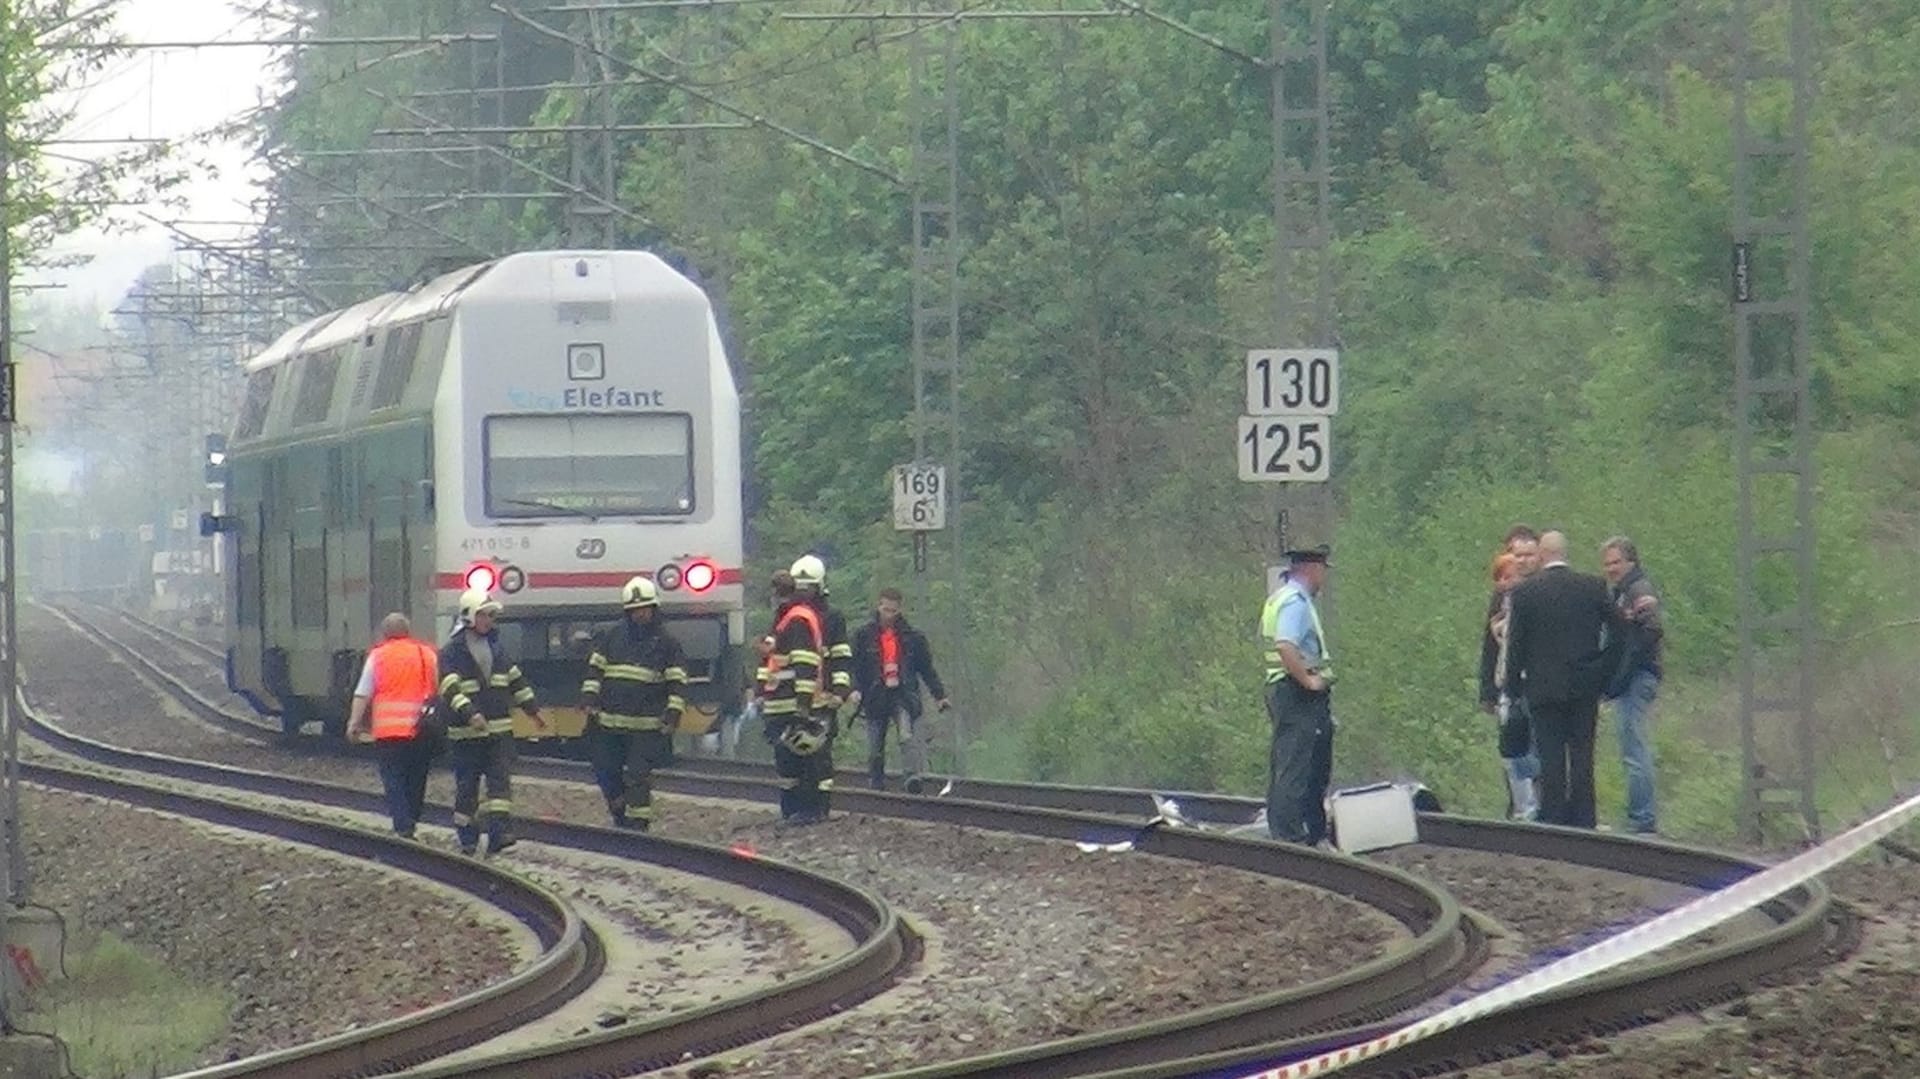 Iveta Bartošová 29. dubna 2014 dobrovolně spáchala sebevraždu pod koly vlaku.